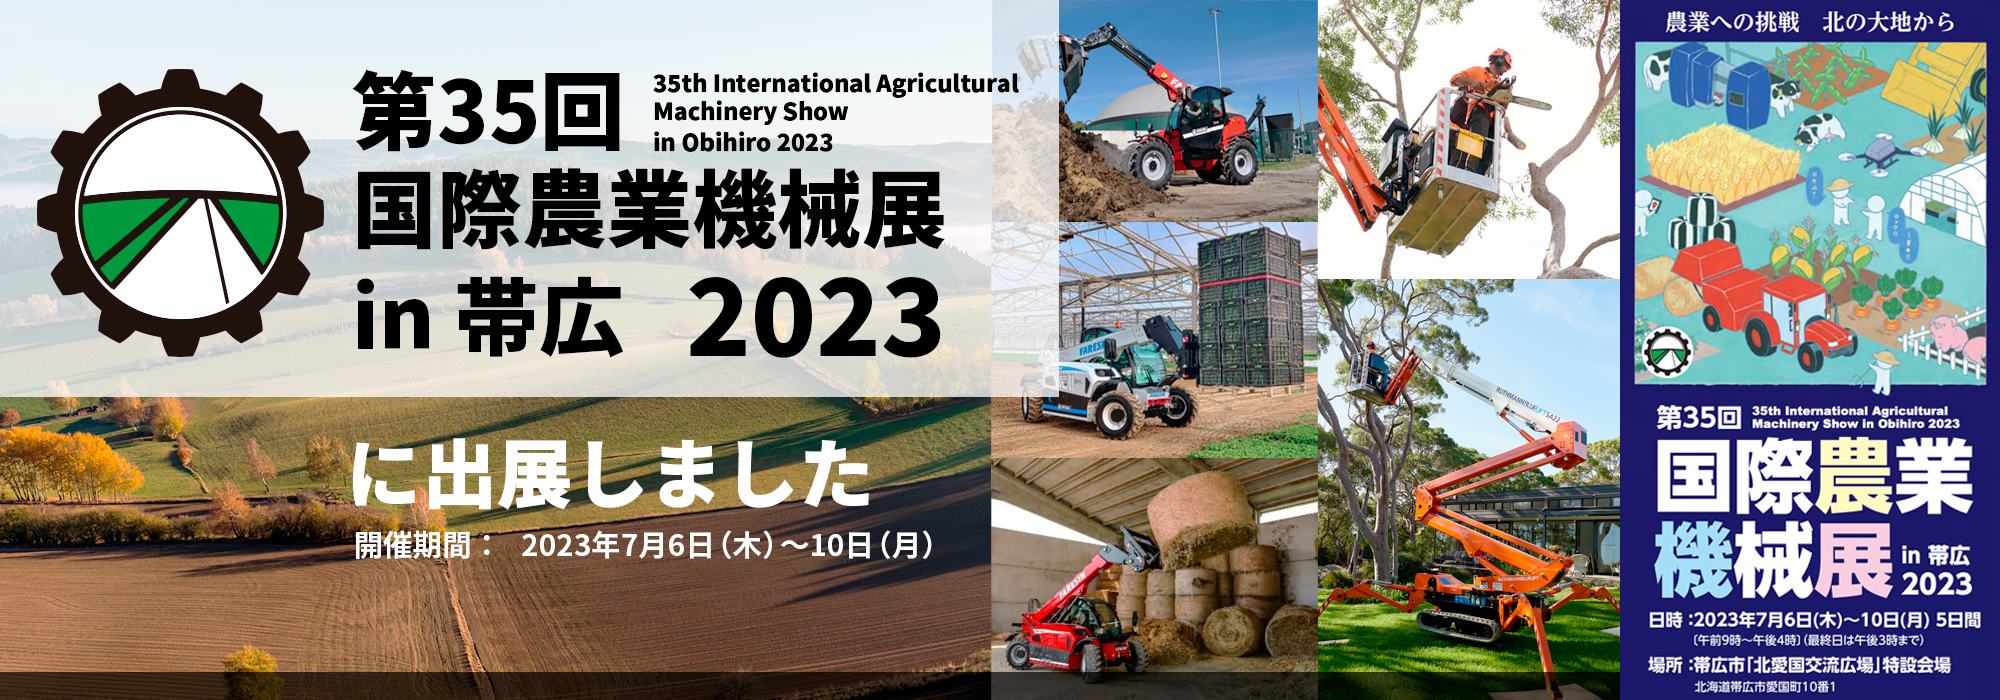 第35回 国際農業機械展 in 帯広